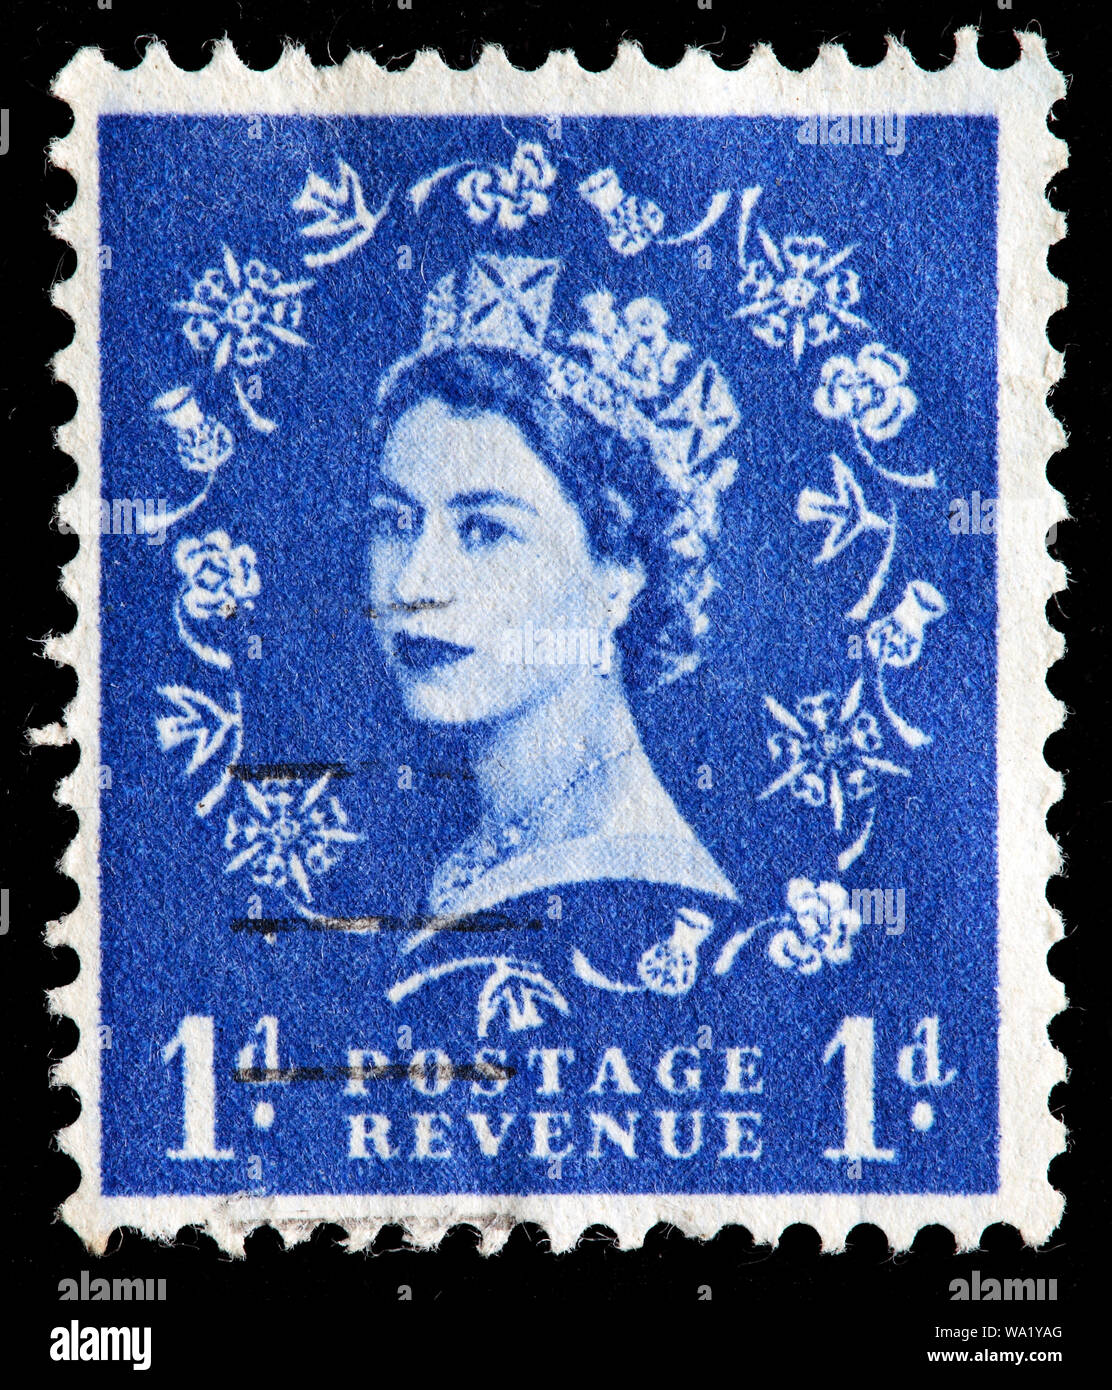 Postage stamp one penny immagini e fotografie stock ad alta risoluzione -  Alamy